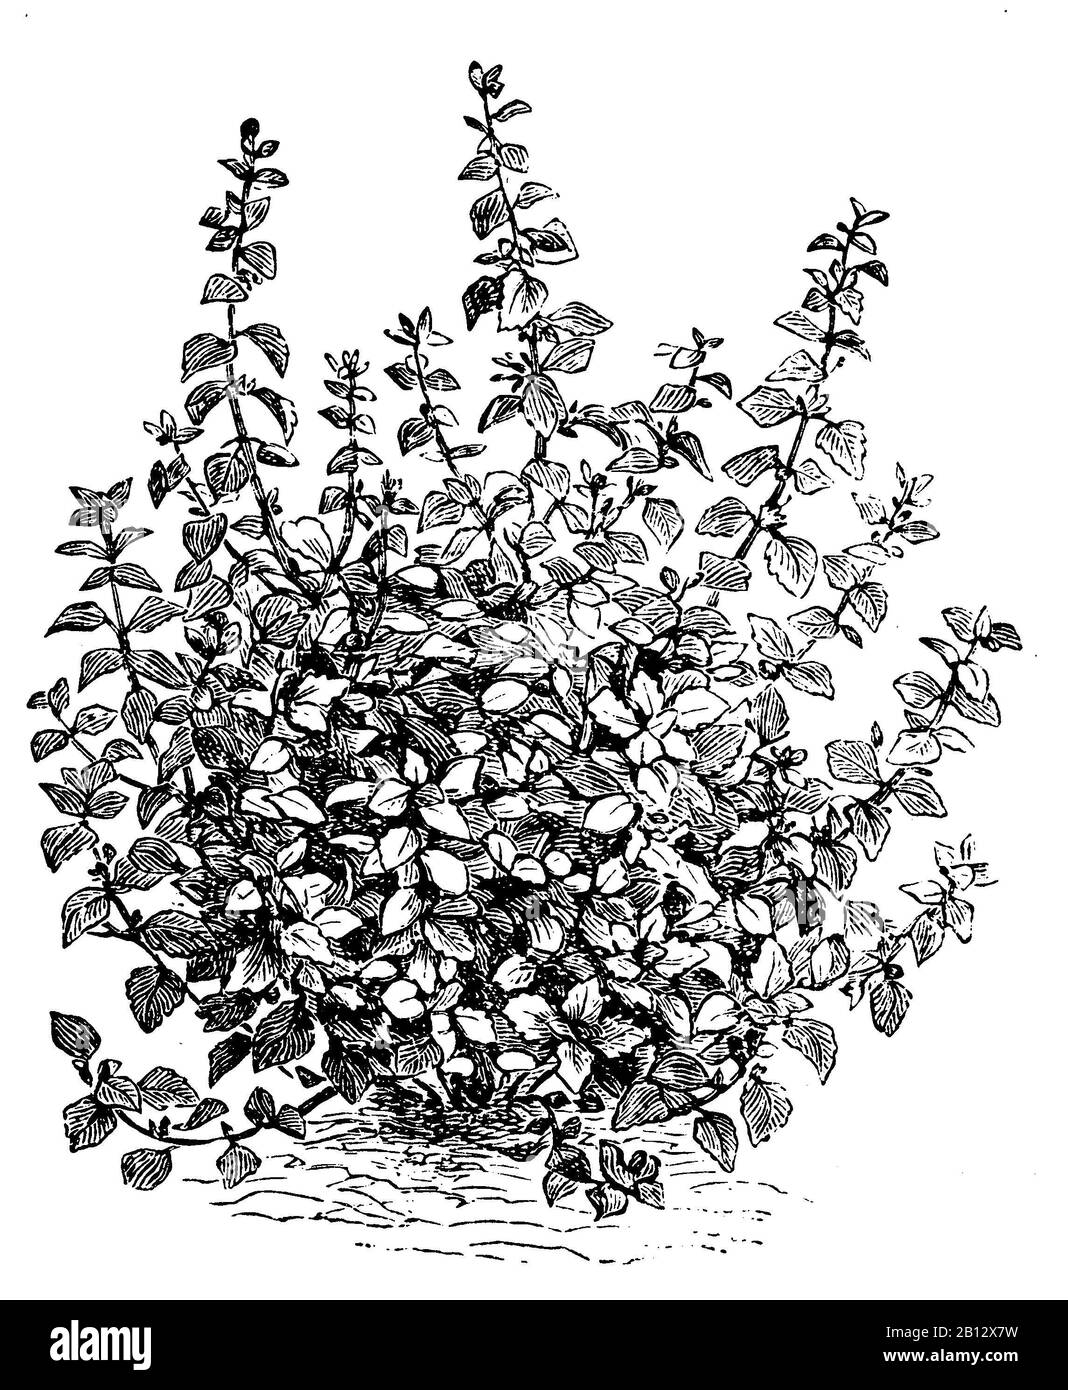 Baumes de citron, Melissa officinalis, Zitronenmelisse, mélisse, anonym (livre de jardin, 1911) Banque D'Images